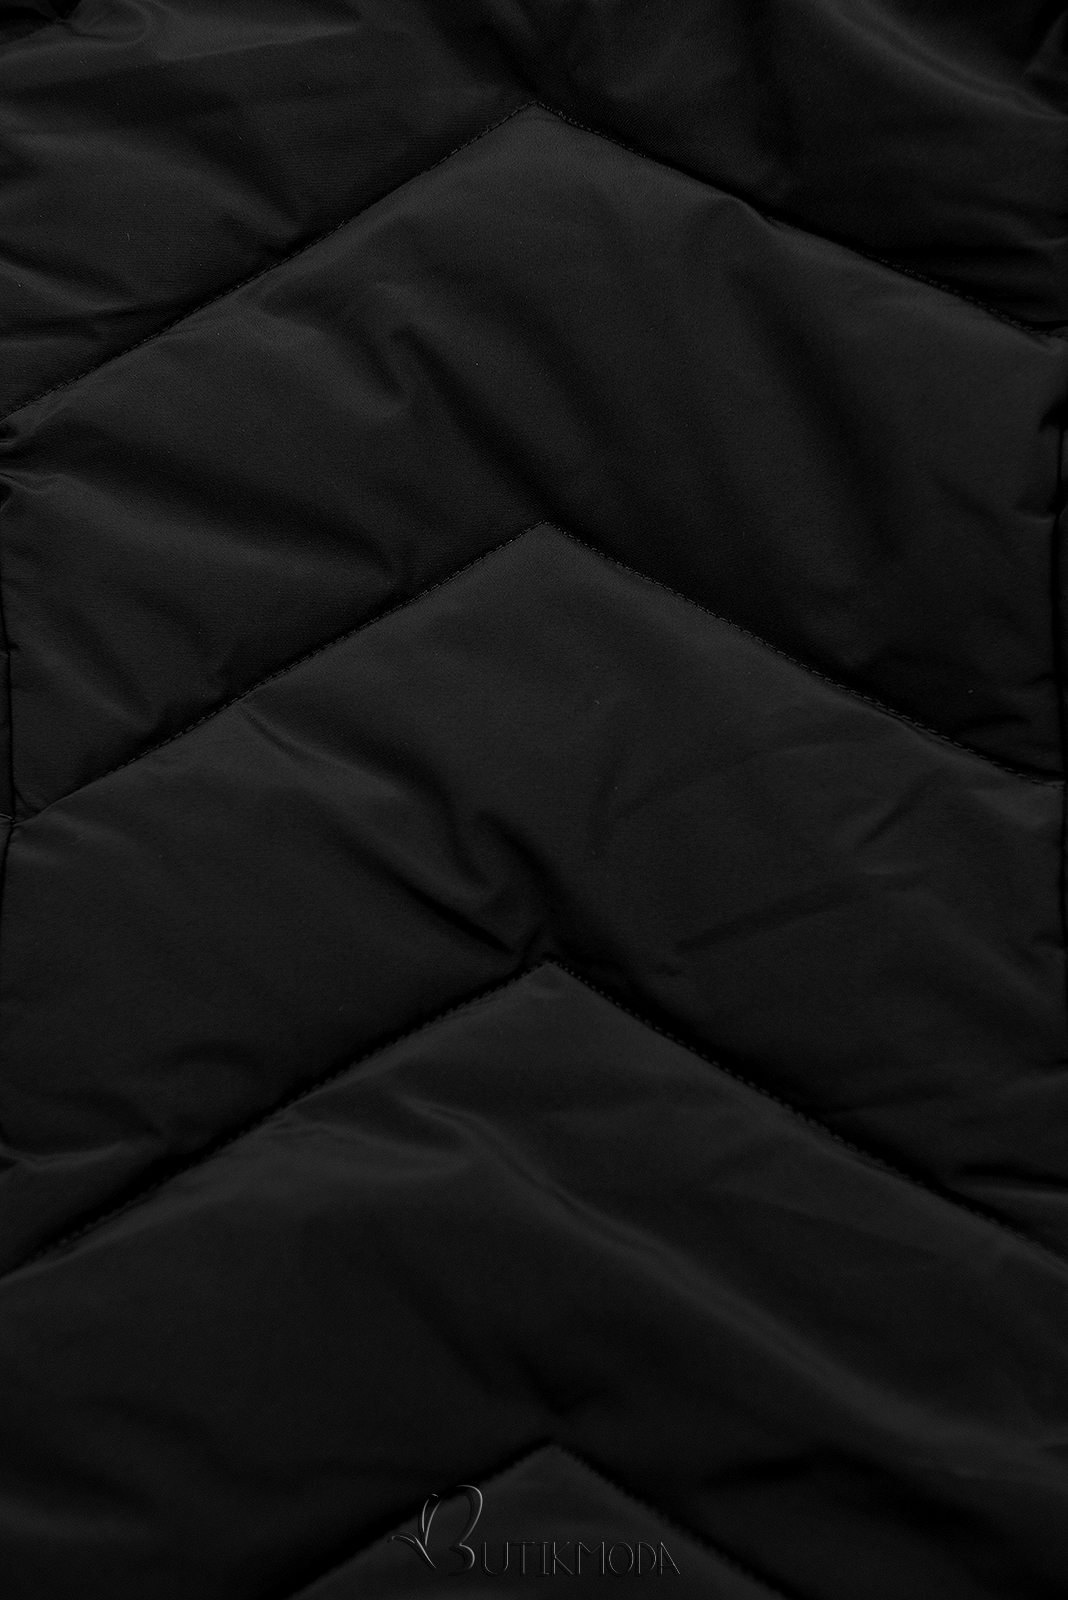 Jacke mit gestepptem Design schwarz